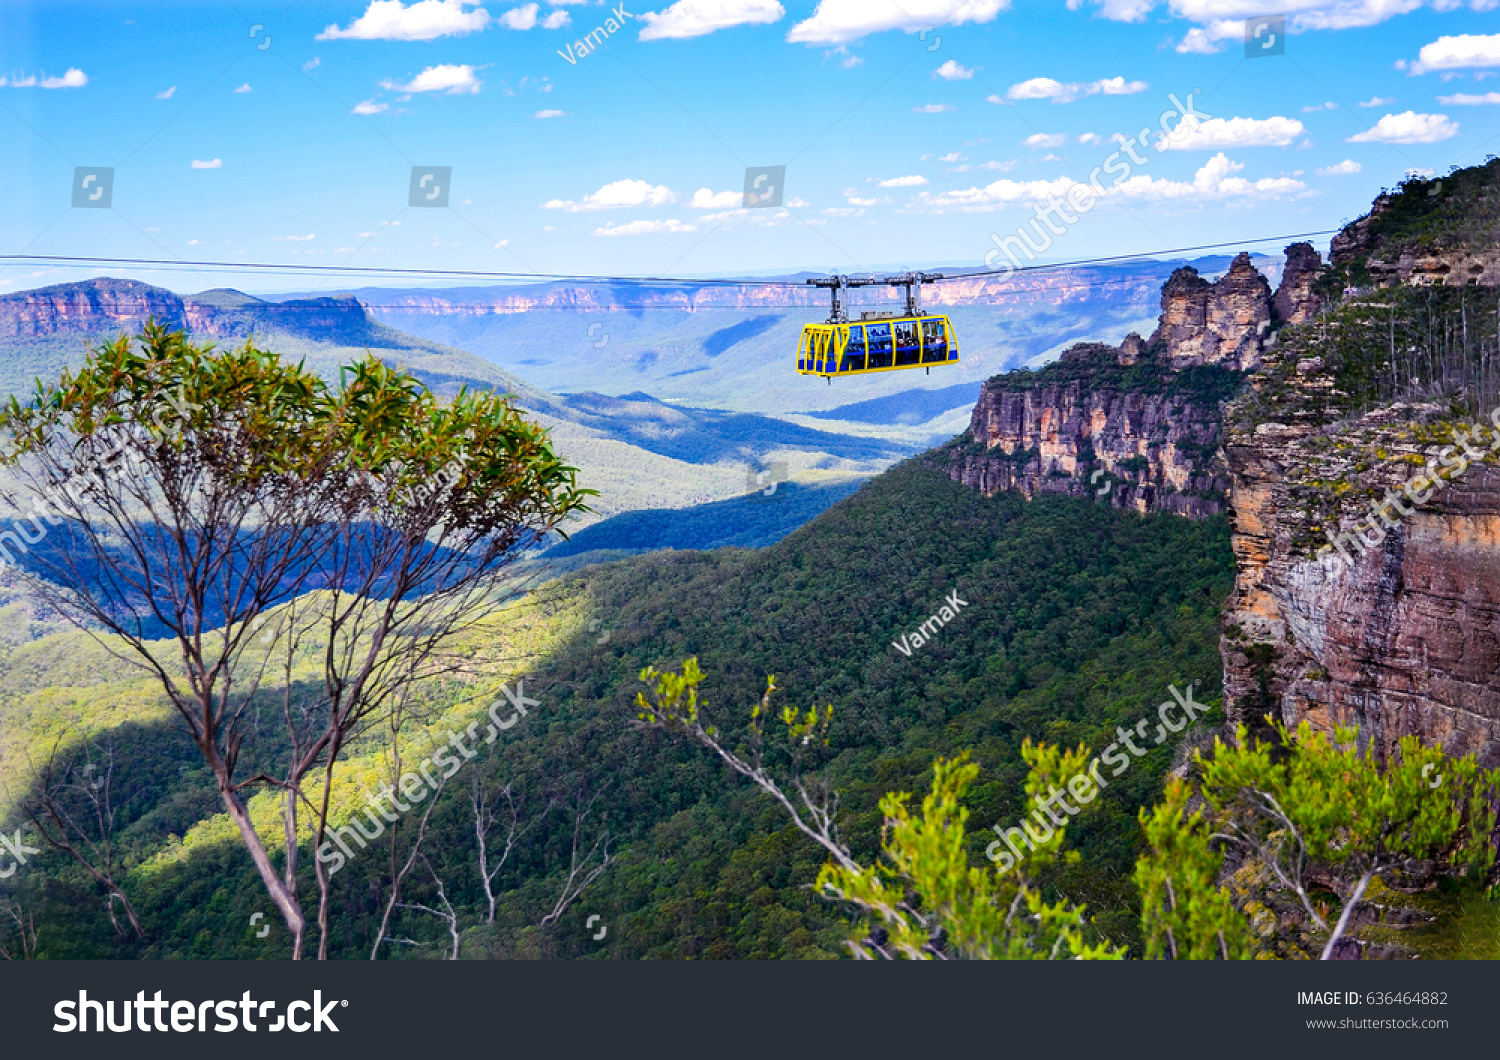 Rainforest cableway landscape in Blue Mountains, Australia #636464882